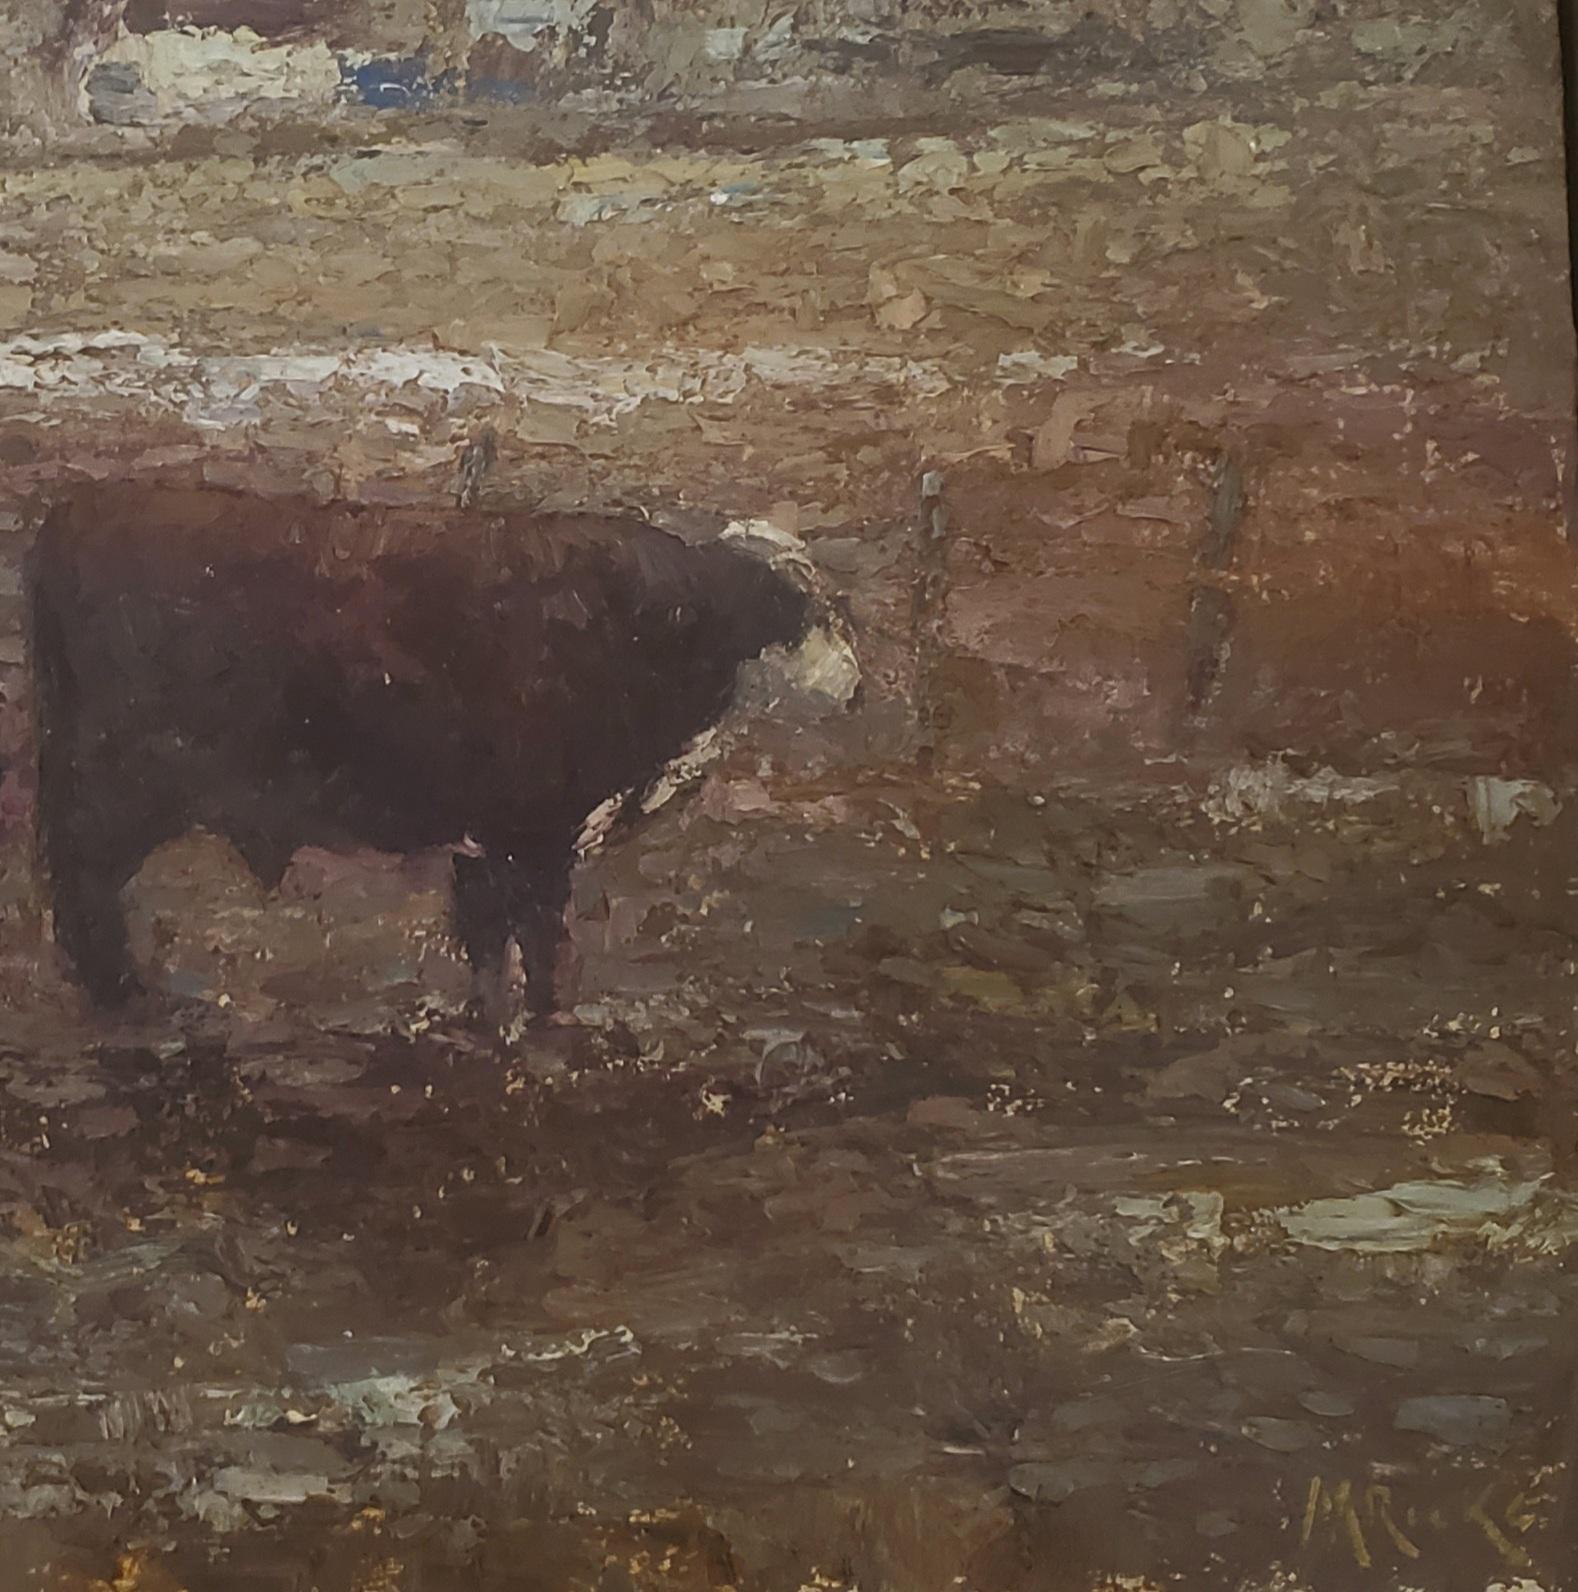 Amerikanische Landschaft mit Stier und Kuh,  Tonalismus, Viehmalerei, Utah, Idaho (Braun), Animal Painting, von Marty Ricks